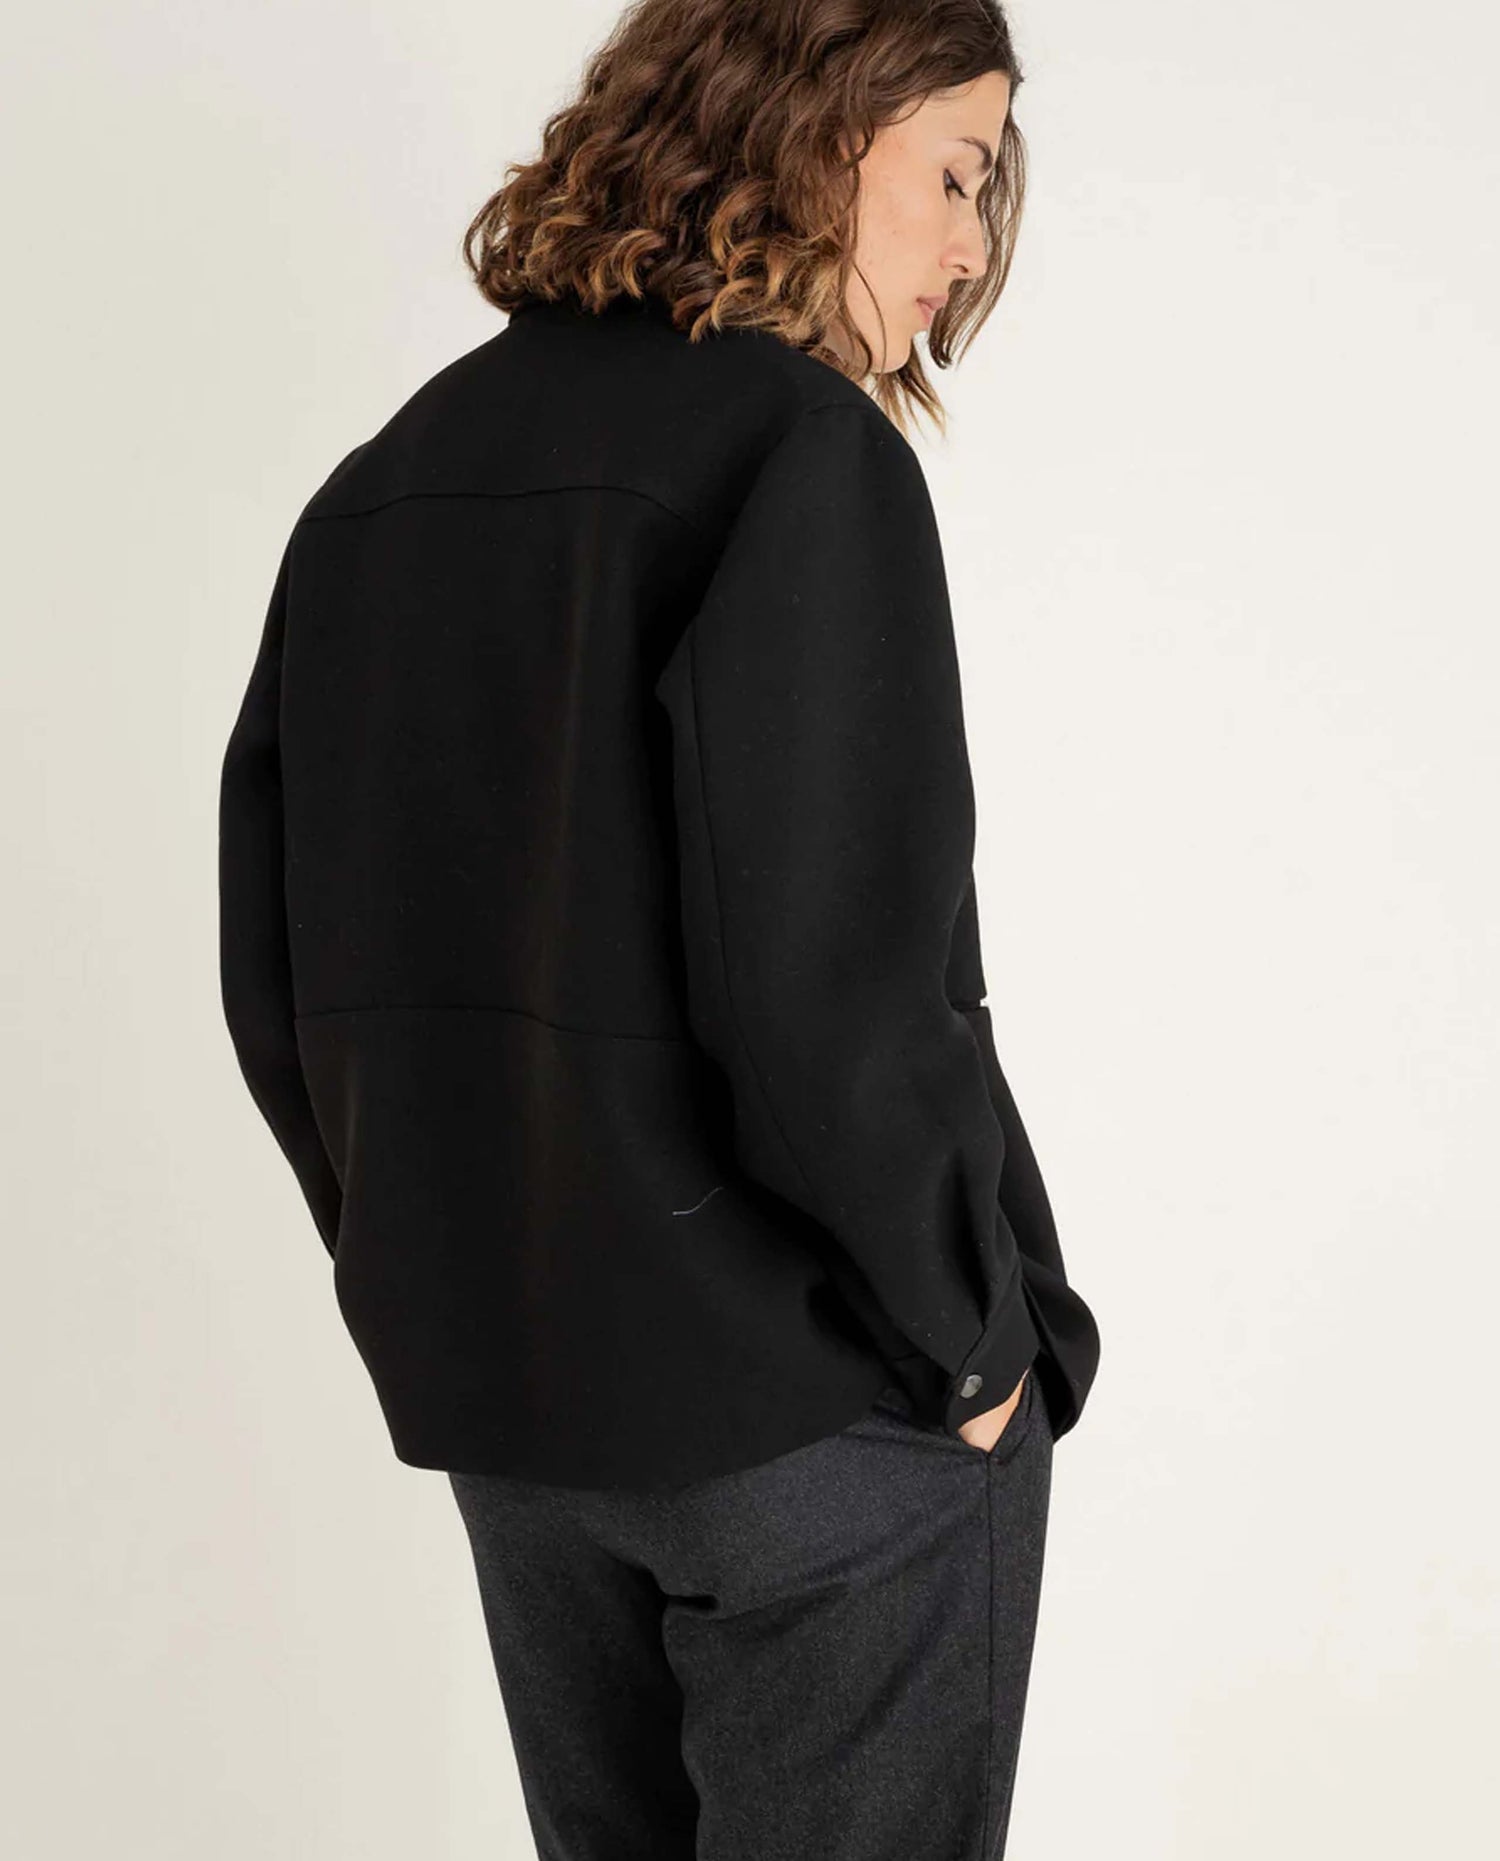 marché commun noyoco veste vancouver femme noire laine upcyclée